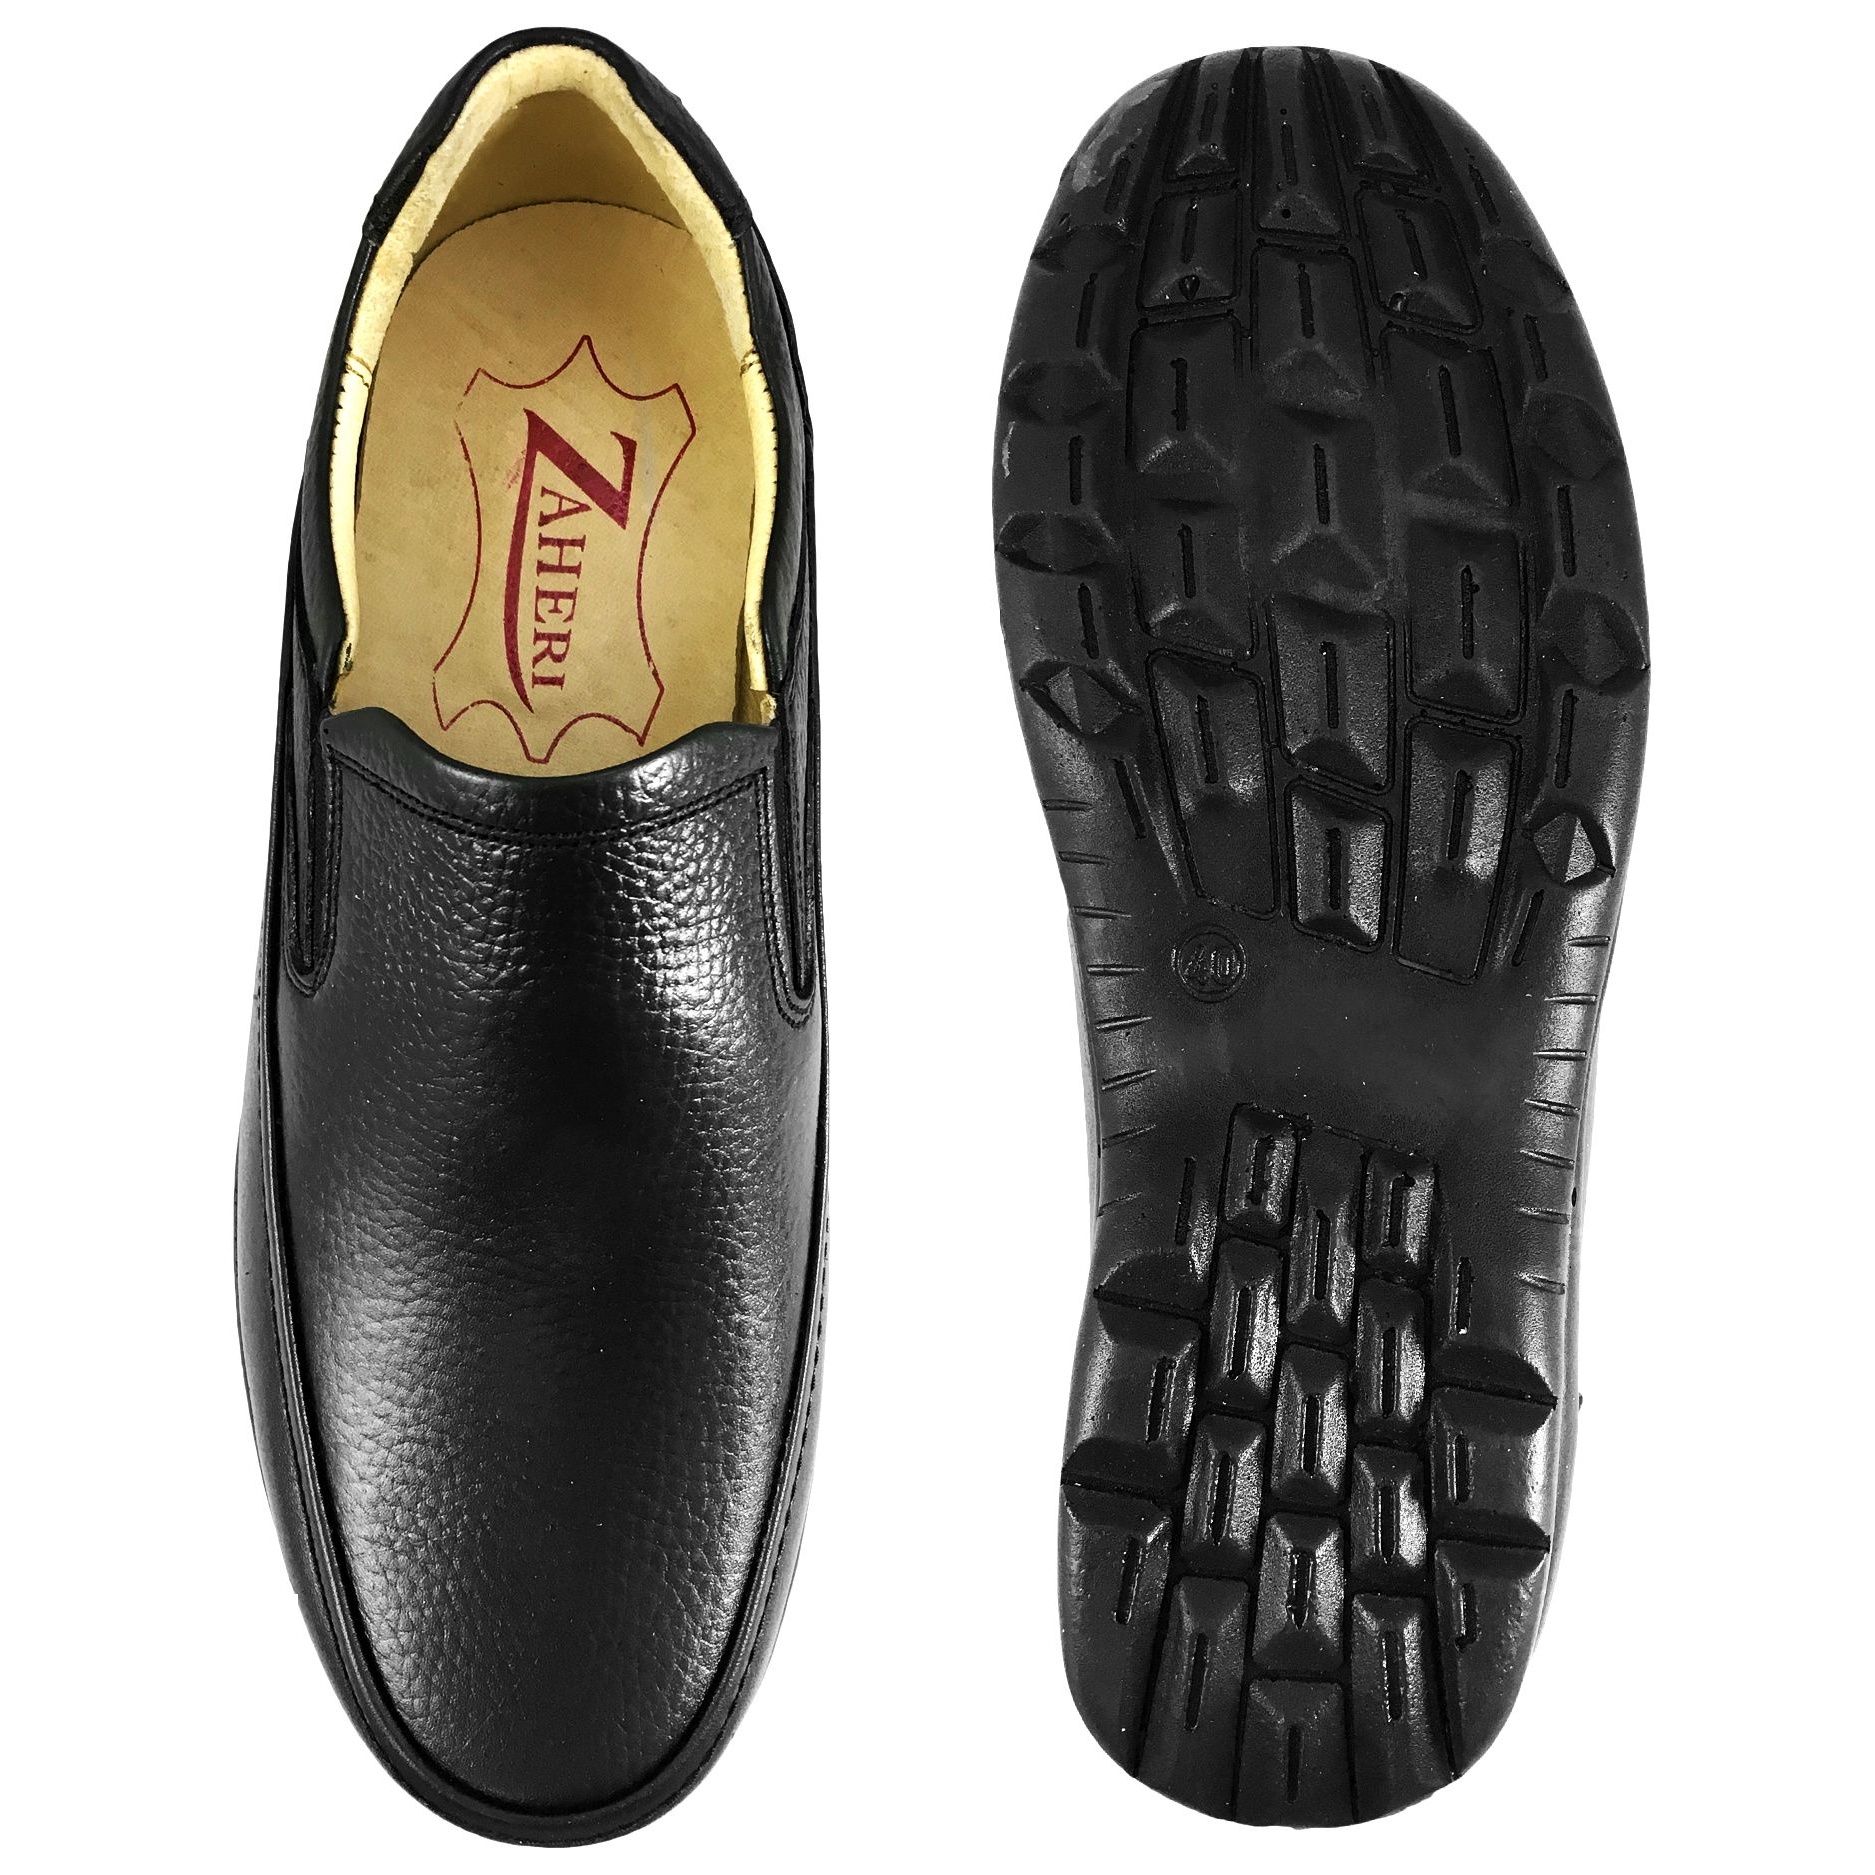 کفش مردانه مدل گریدر کد B5179